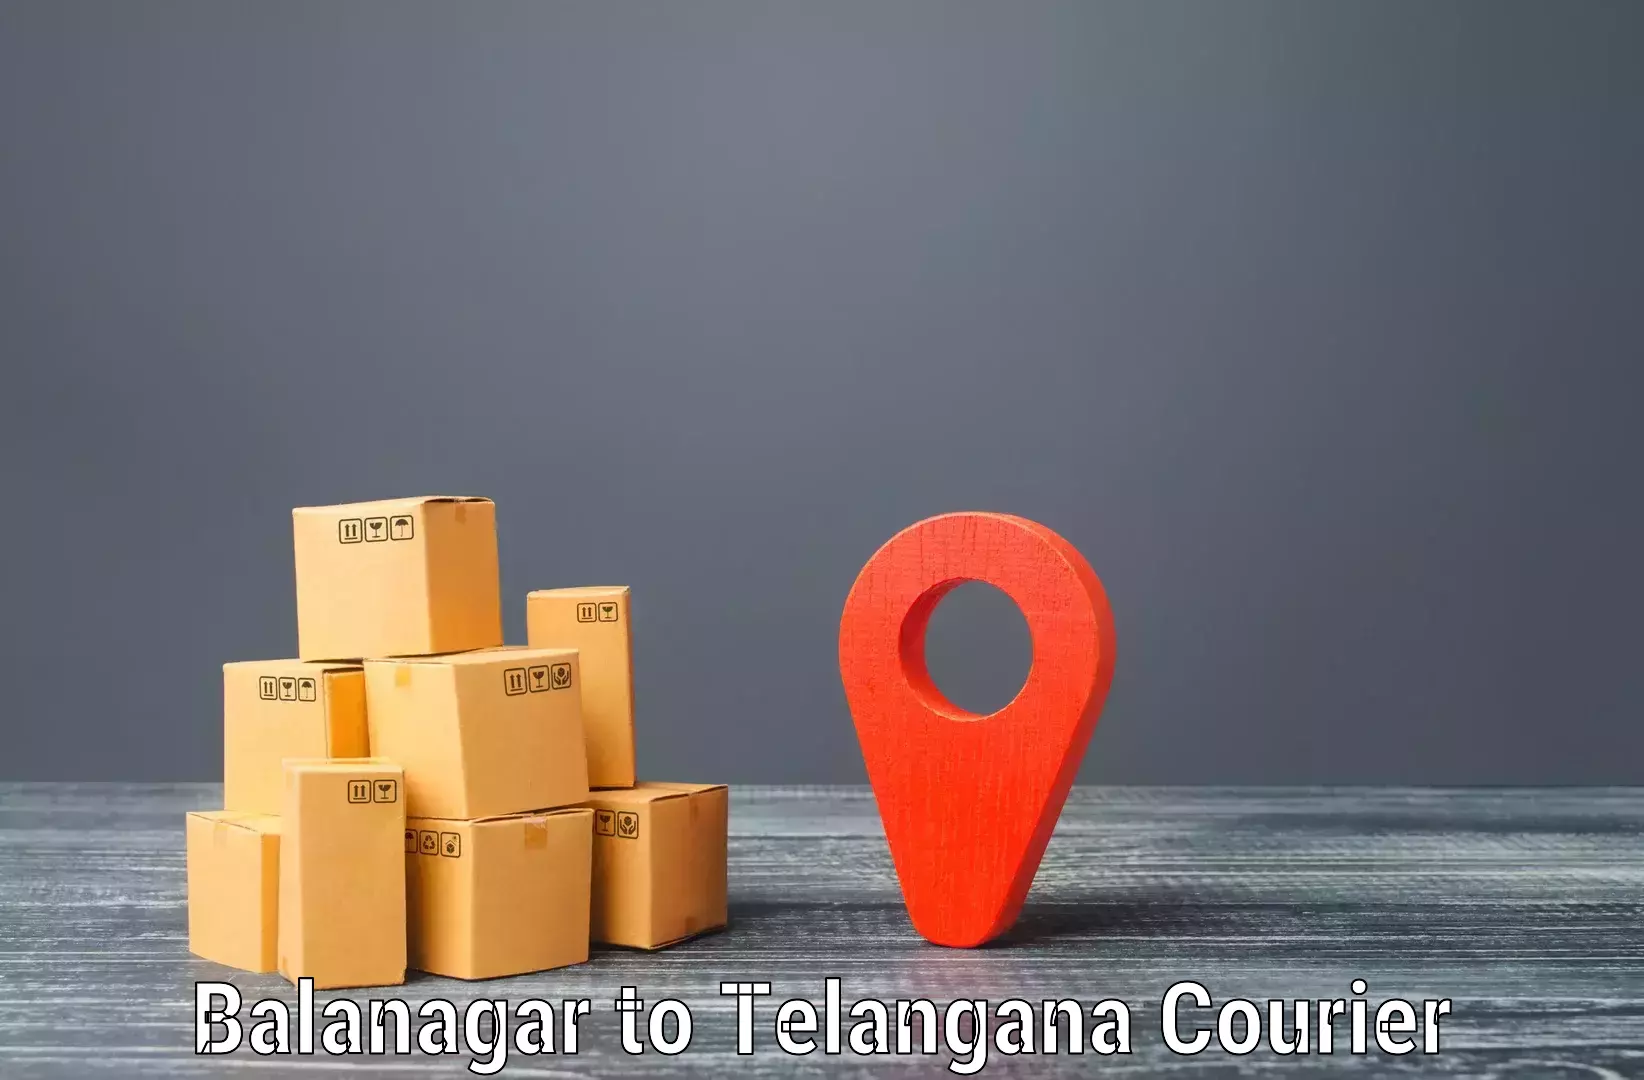 High-capacity shipping options Balanagar to Mogulla Pally